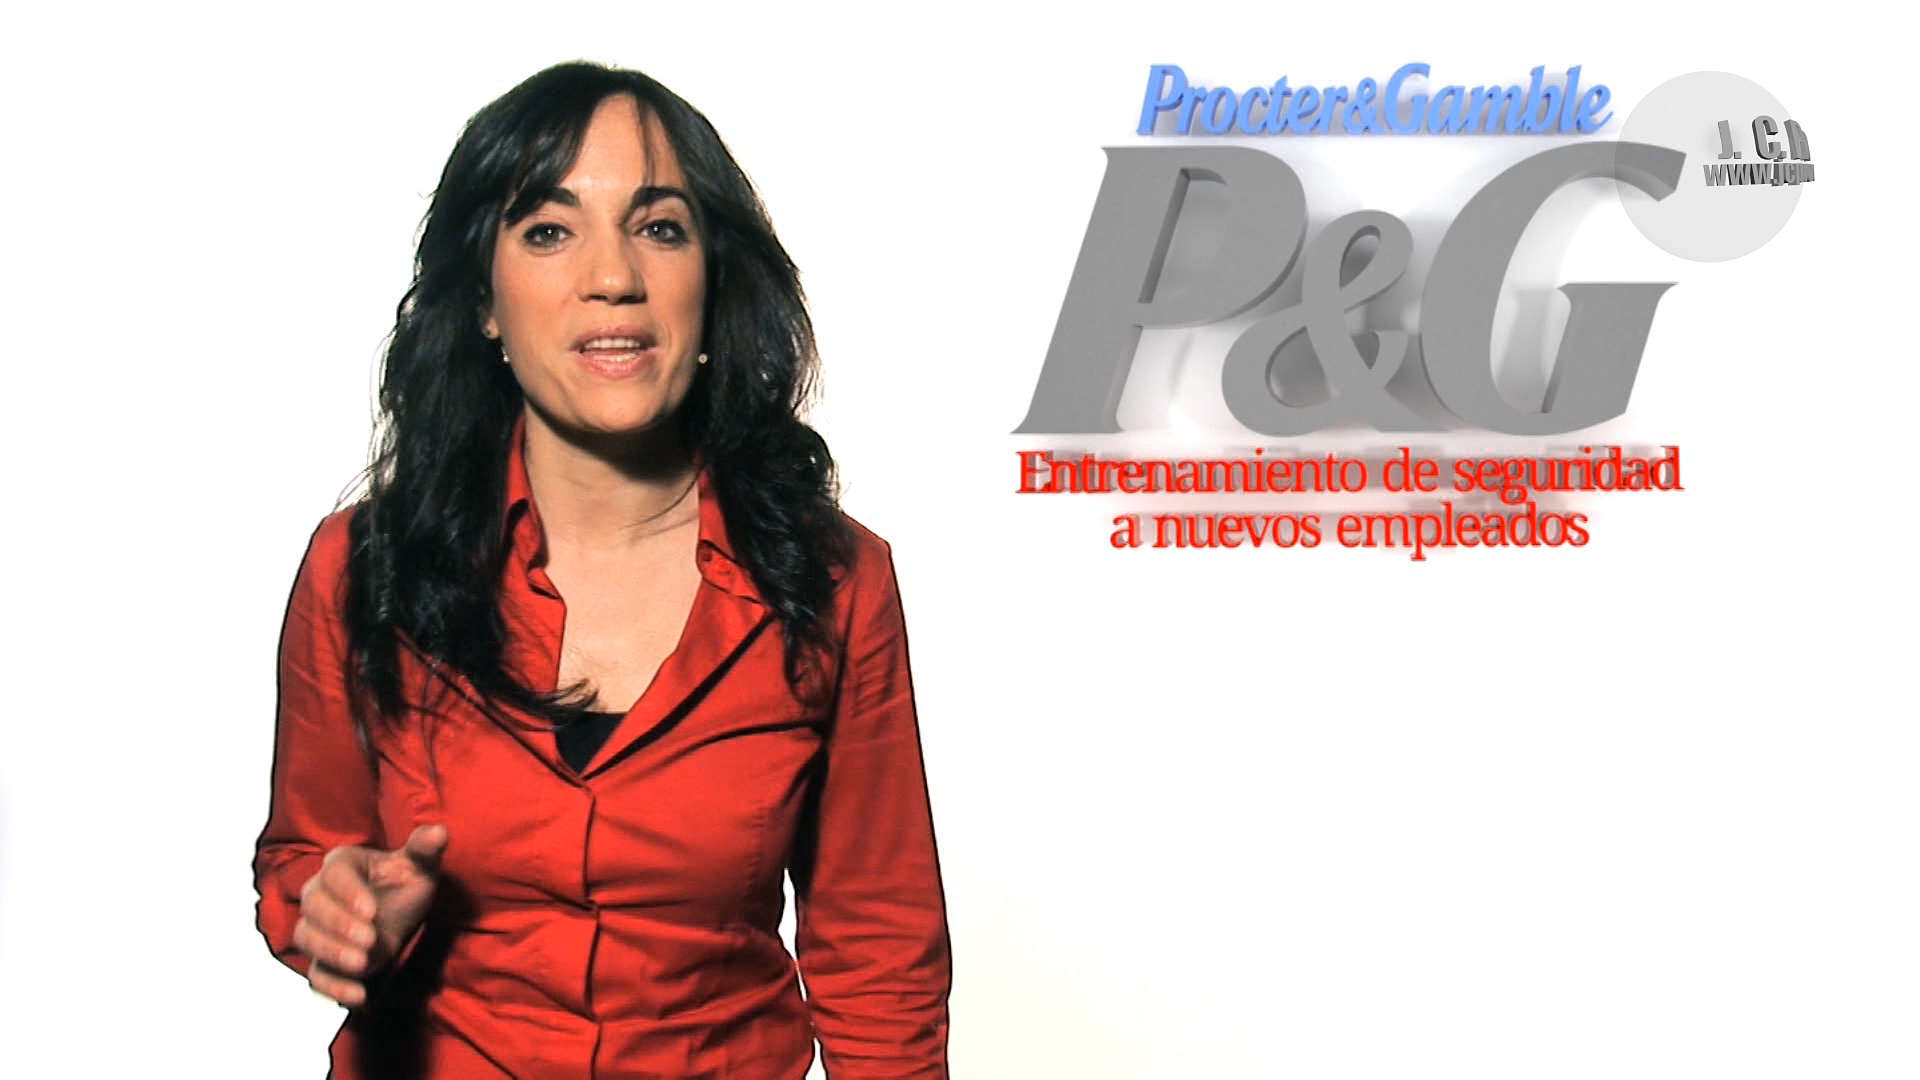 P&G Seguridad. Vídeo corporativo para la empresa Procter & Gamble de Mataró conducido por Yolanda Rodríguez y grabado en nuestro plató.